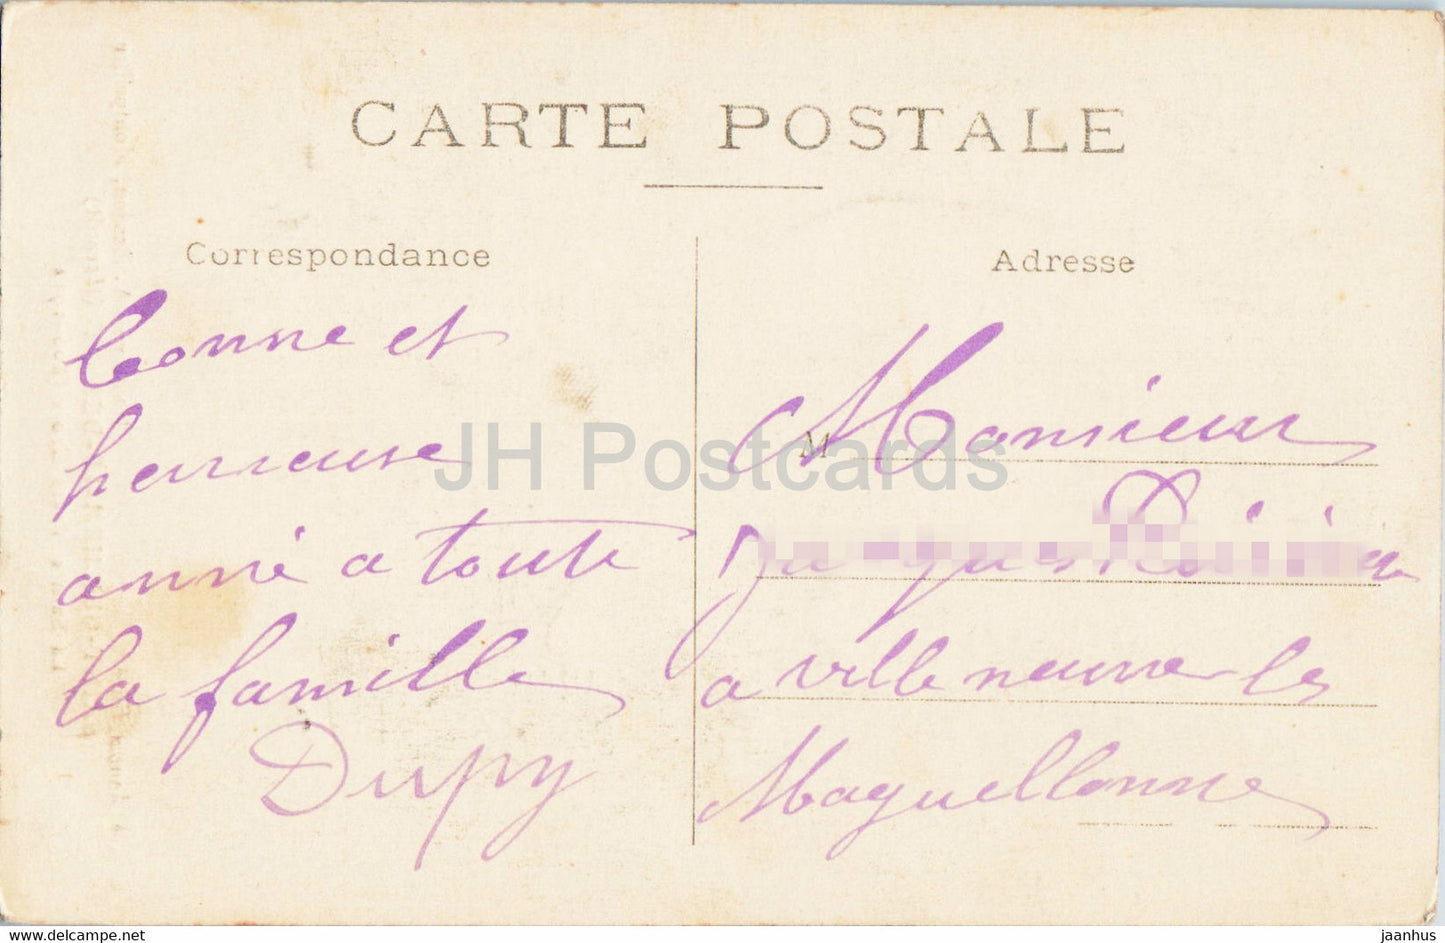 Saint Guilhem Le Désert - La Vraie Sainte Croix - carte postale ancienne - France - occasion